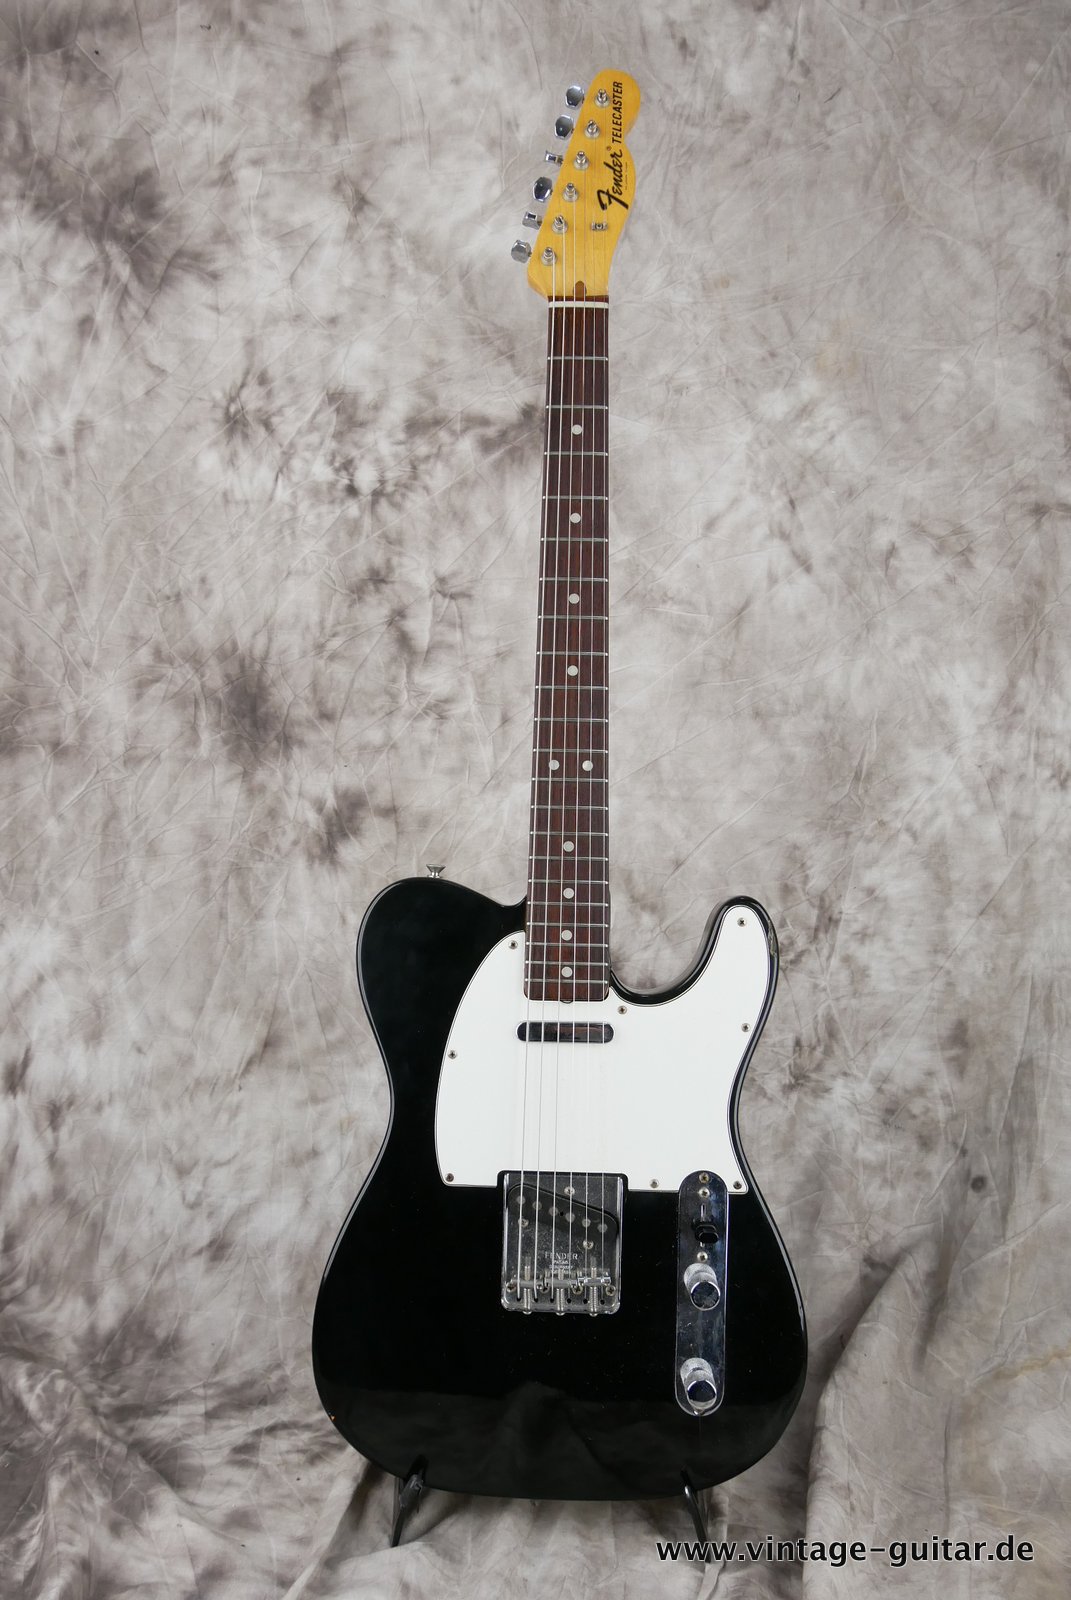 Fender-Telecaster-1972-black-over-sunburst-001.JPG